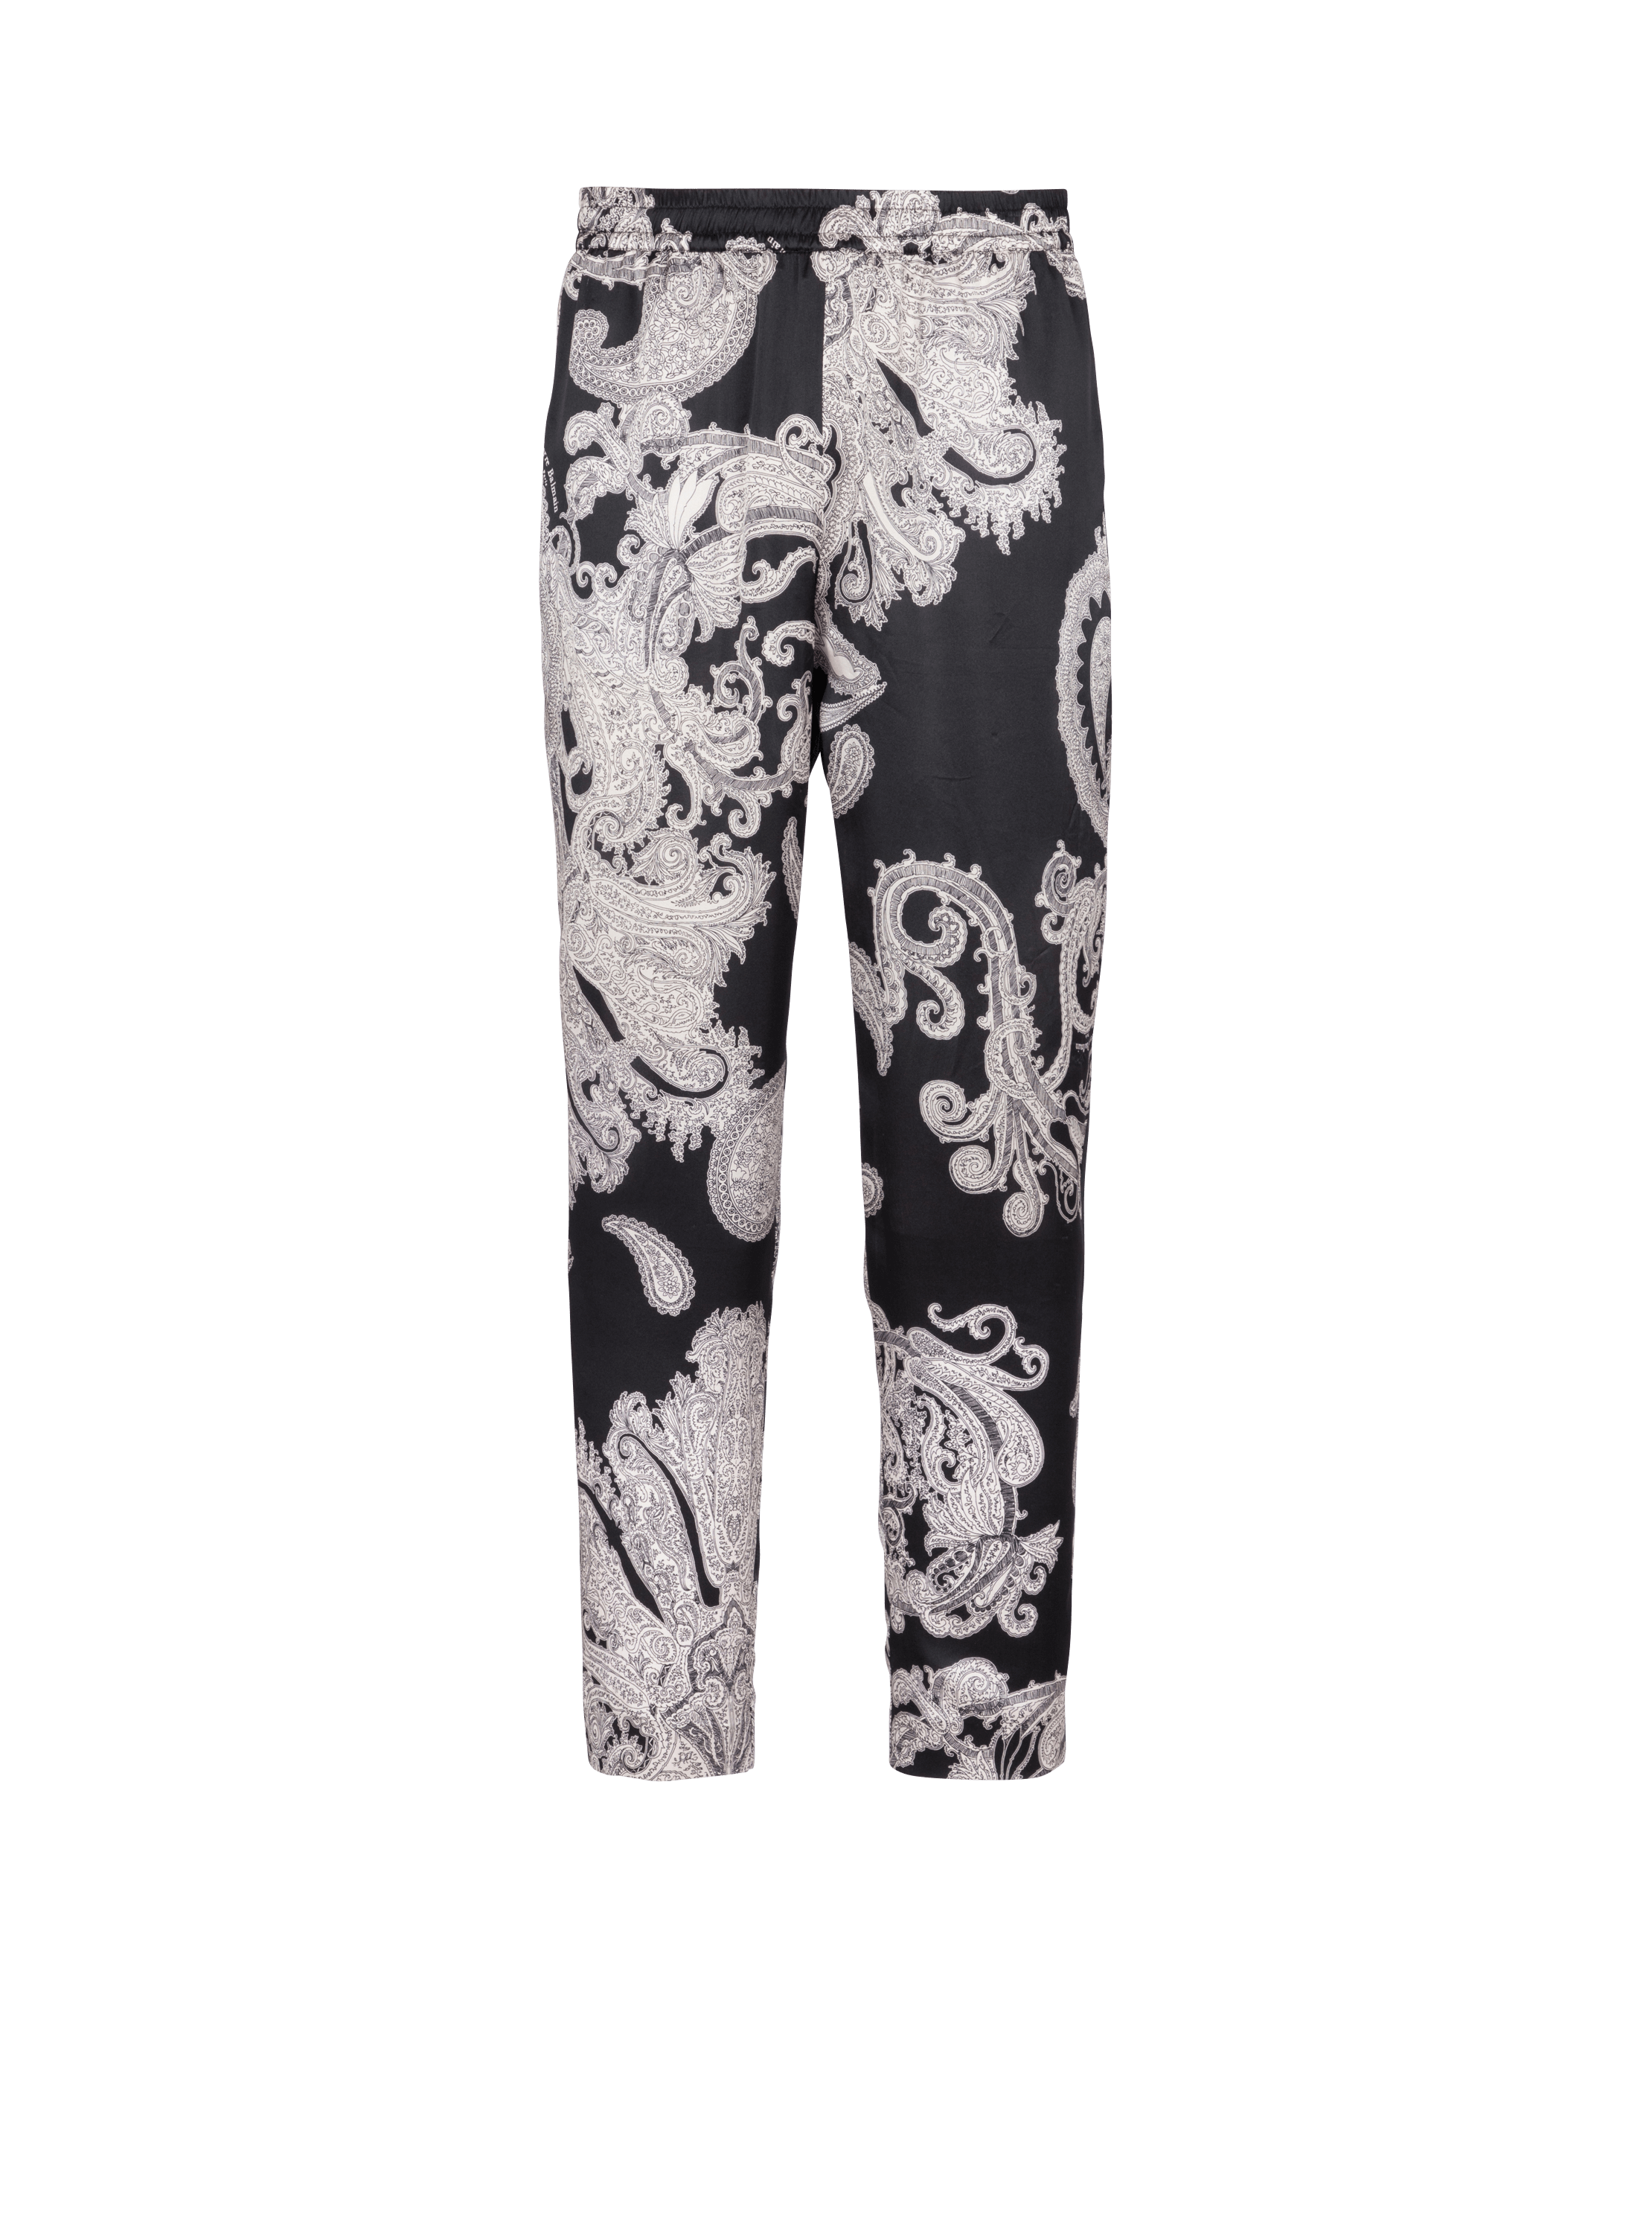 Fleur Du Mal paisley-print Silk Trousers - Farfetch